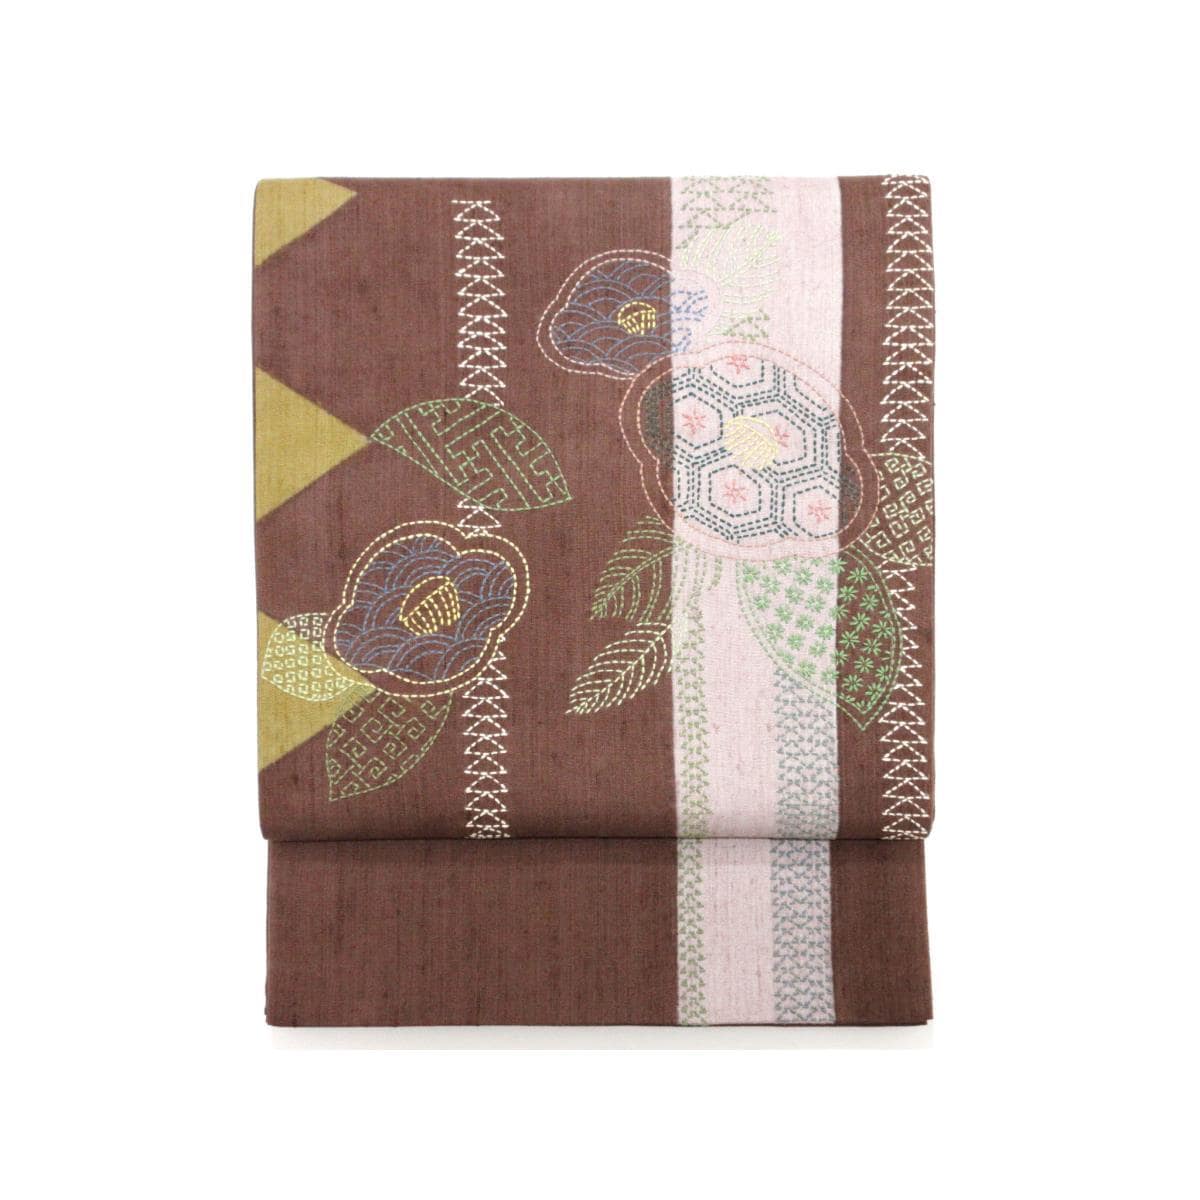 袋帶繭綢編織刺繡